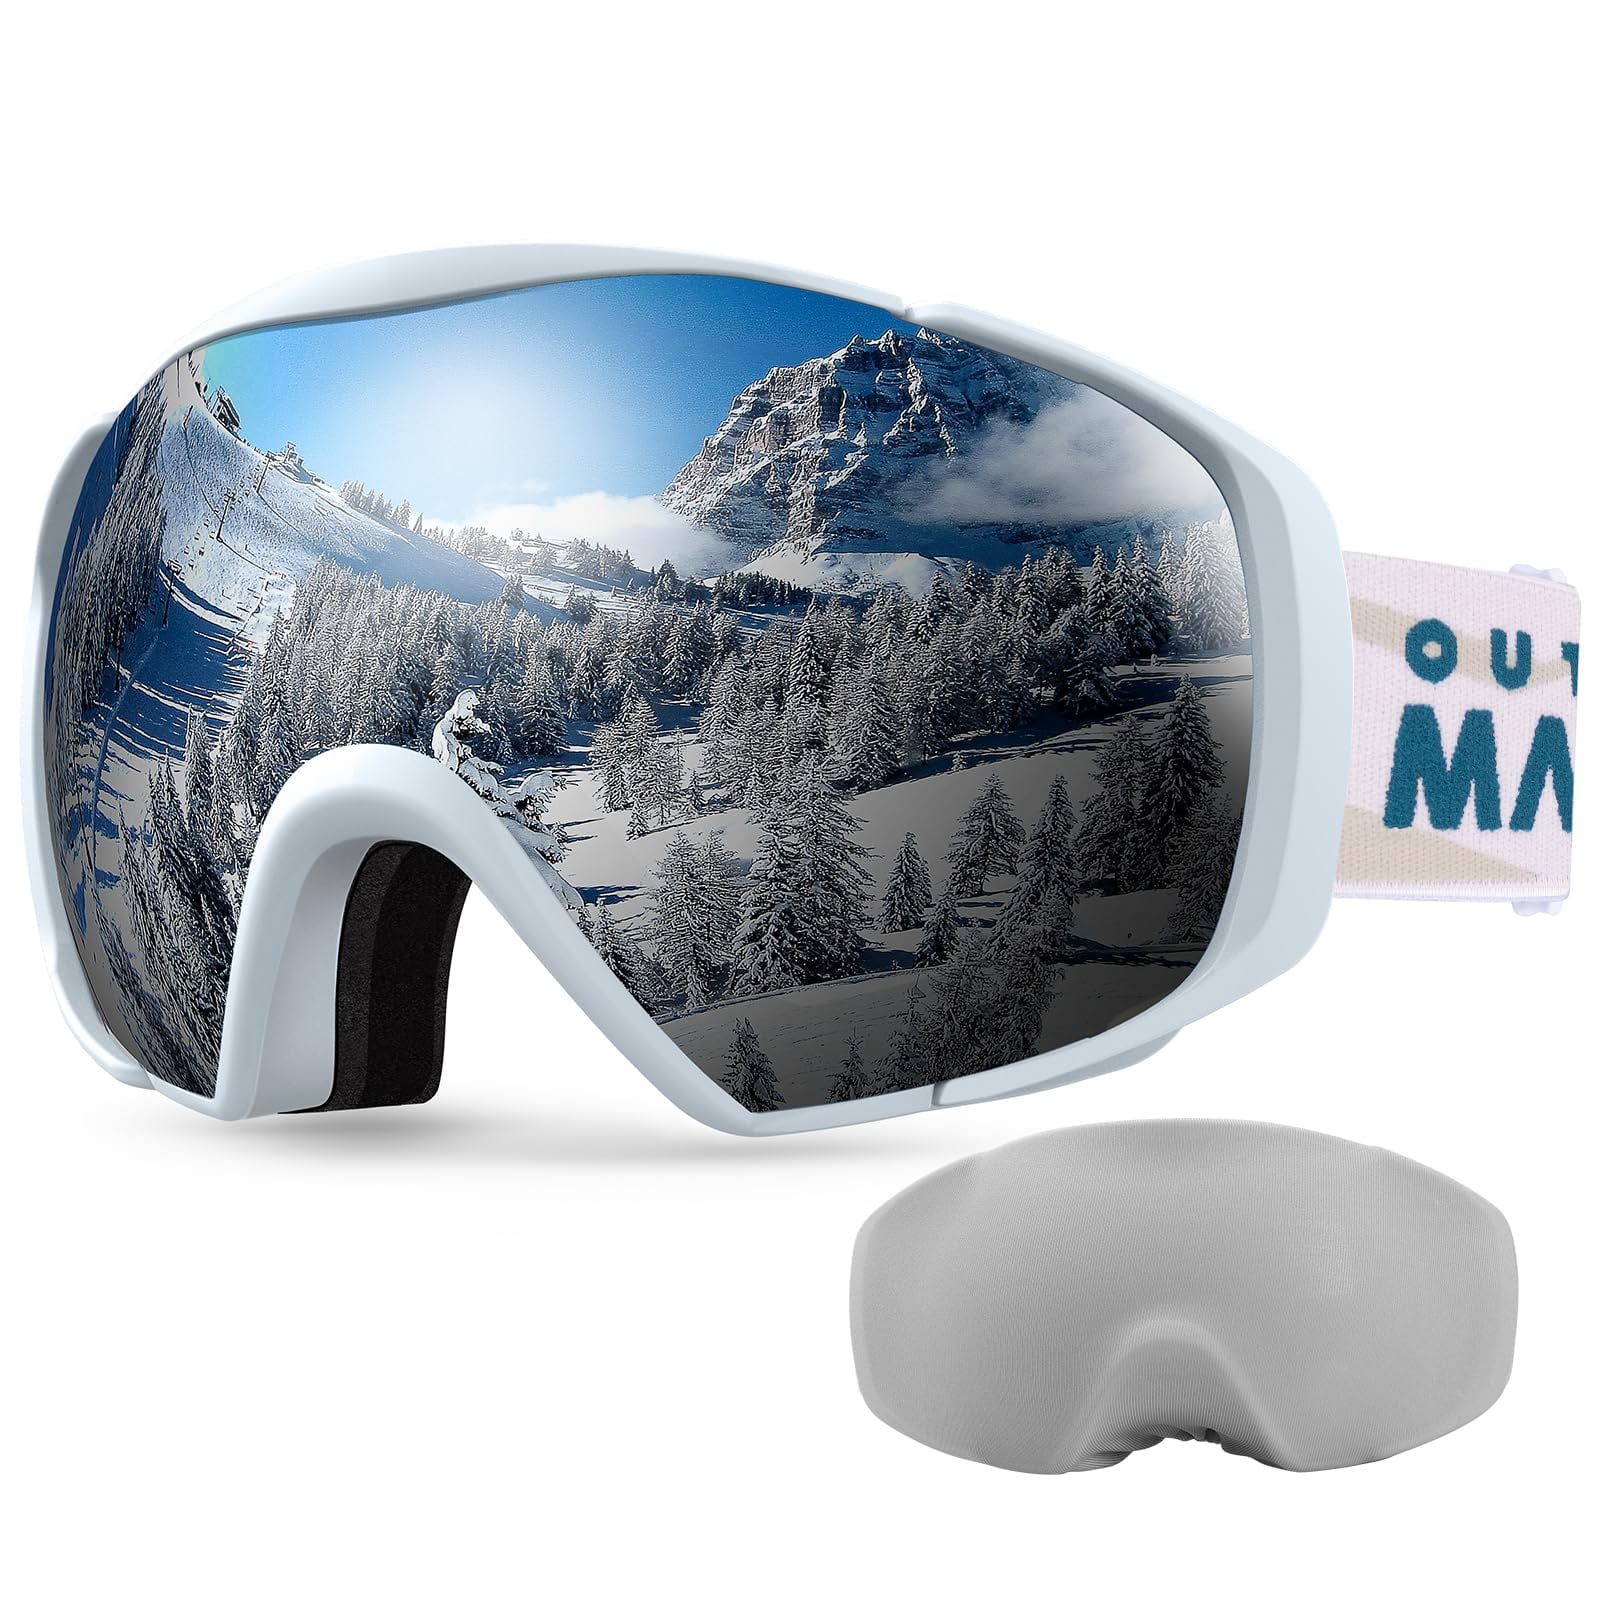 Optix 55 New Anti Fog Spray for Glasses - Safe for Anti Reflective Lenses &  All Lenses | Defogger for Eye Glasses, Mirrors, Swim Goggles